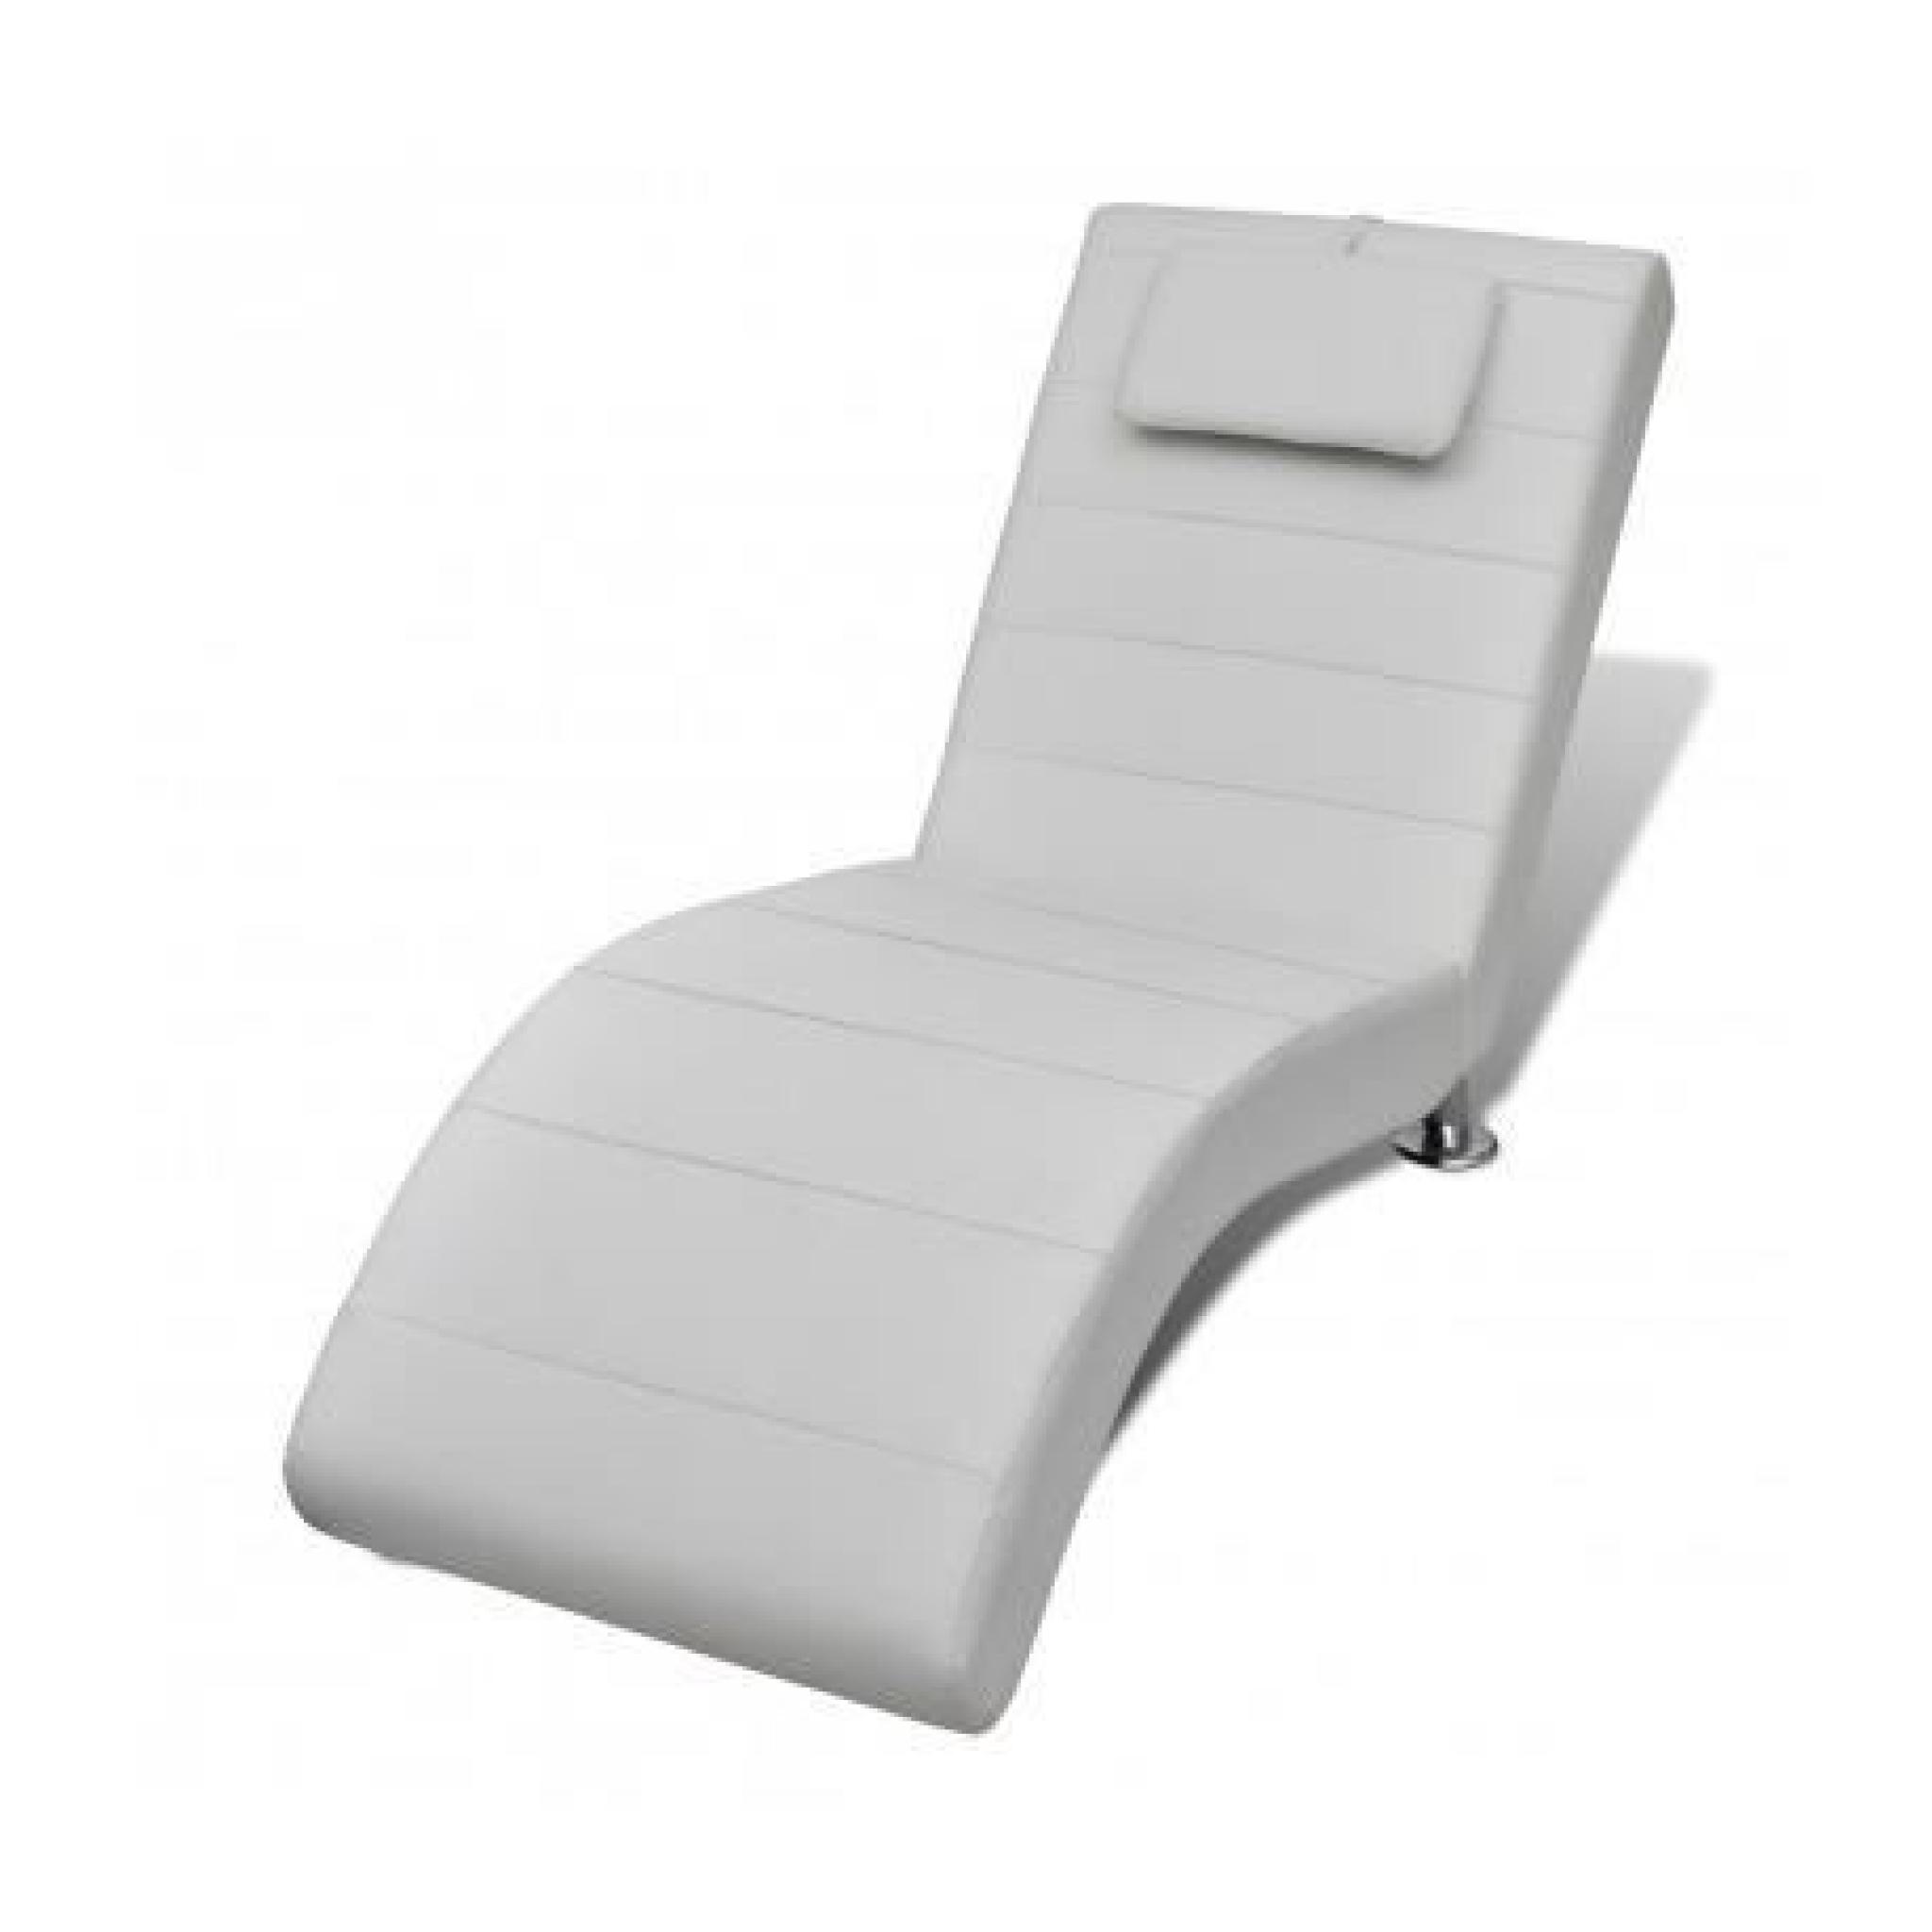 Chaise longue / Transat blanc avec appui-tête Maja+